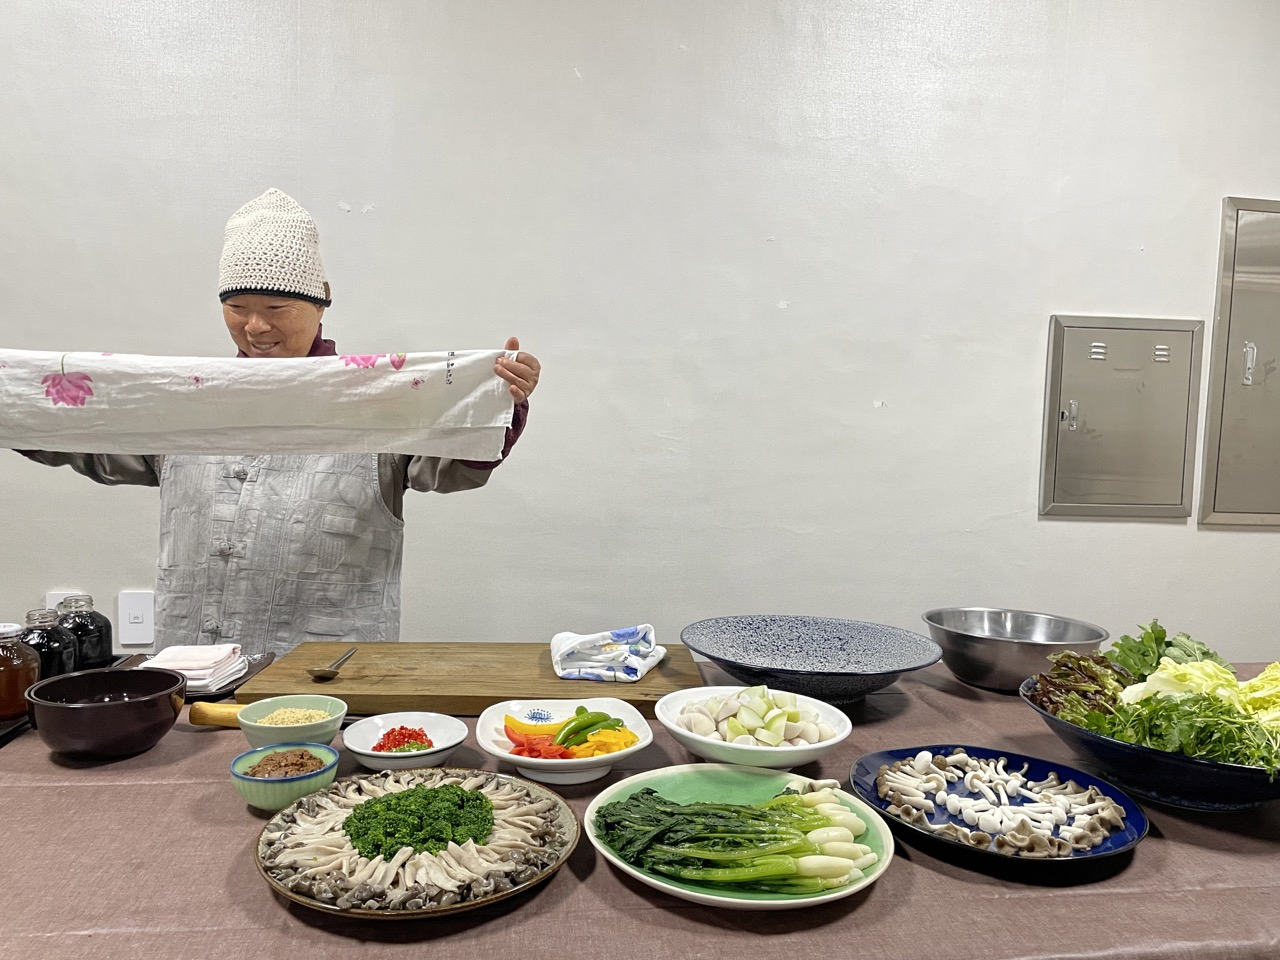 Ven. Jeong Kwan prepares a meal at her cooking studio at Baekyangsa, on Nov. 10. (Park Ga-young/The Korea Herald)